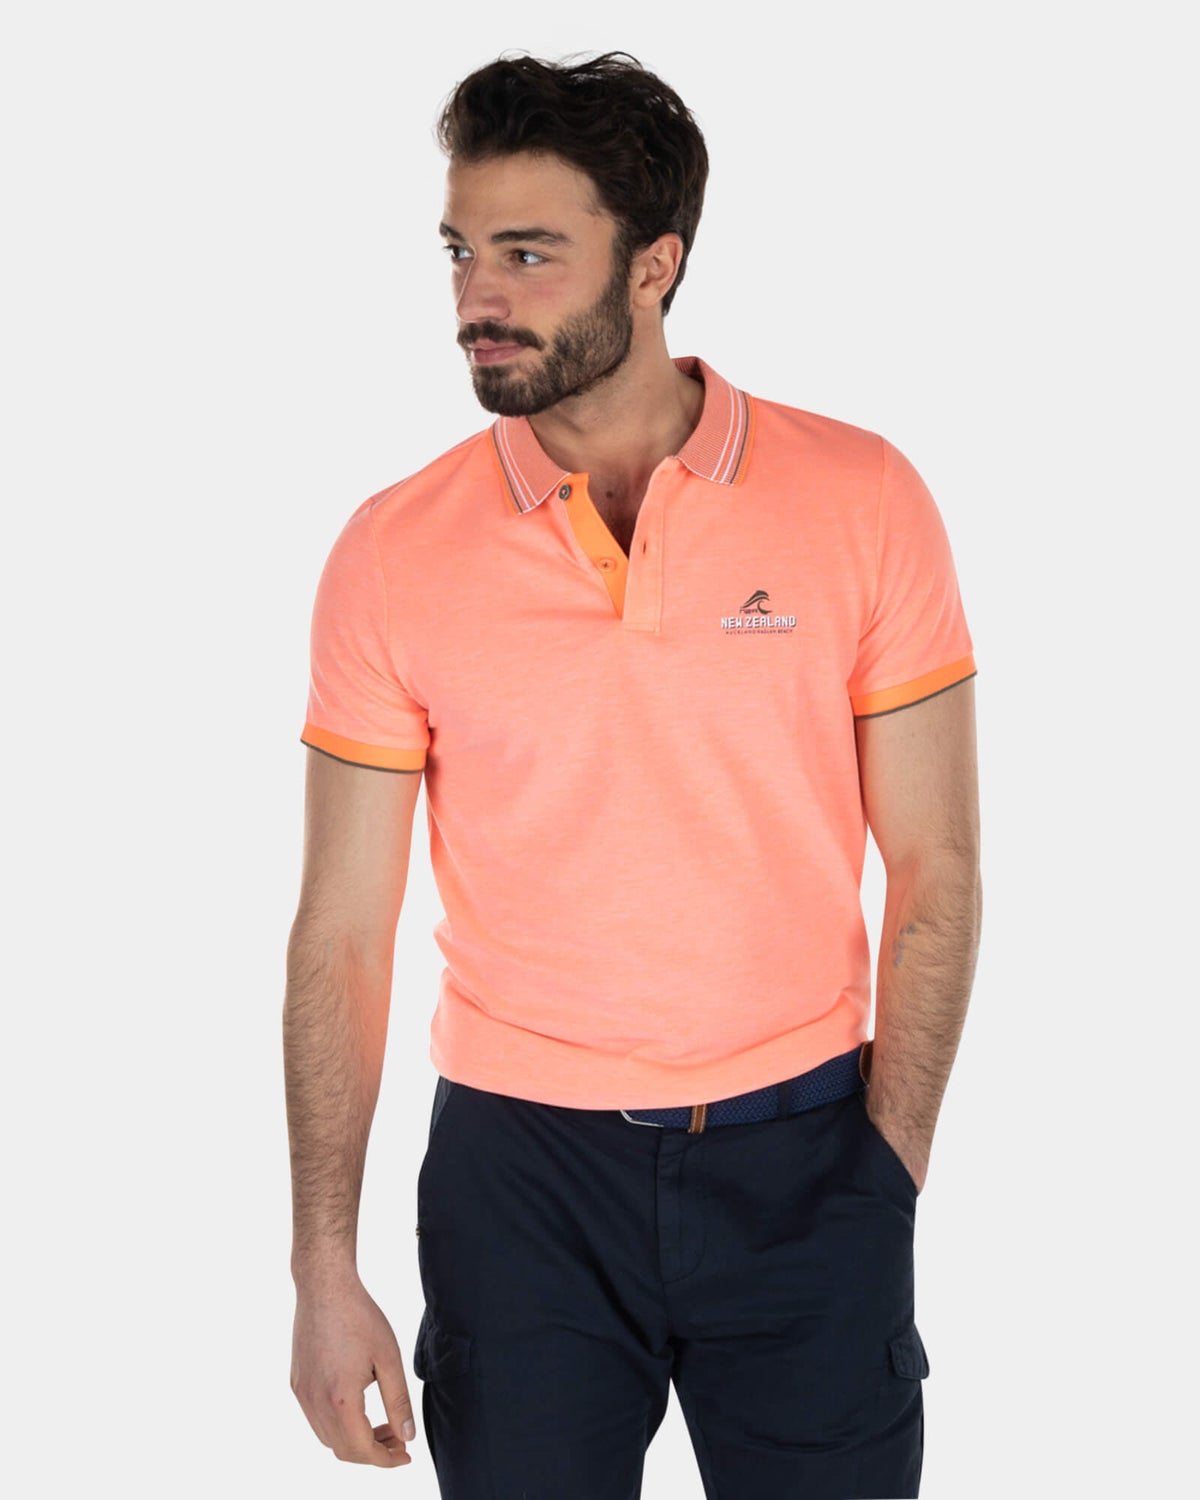 Buntes Poloshirt mit gestreiftem Kragen - High Summer Orange